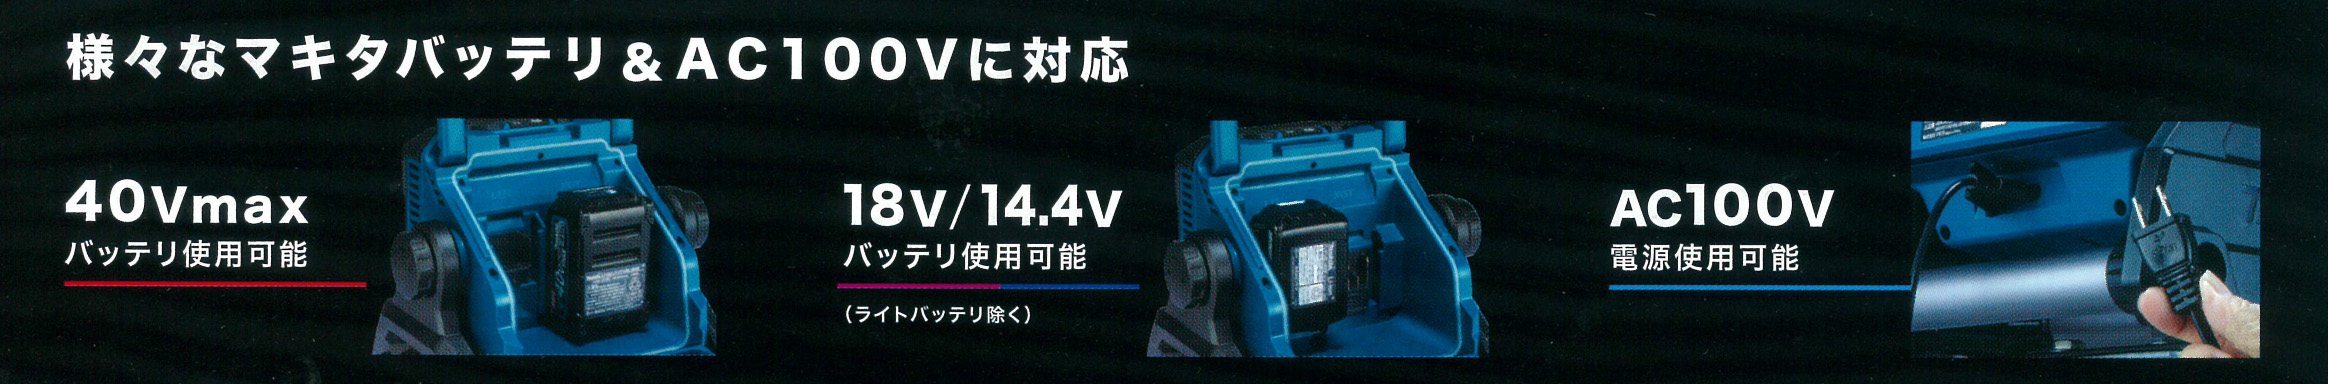 マキタ マキタ ML004G 充電式スタンドライト 14.4V/18V/40Vmax/AC100V (ACアダプタ付属・本体のみ※バッテリ・充電器別売)  コードレス